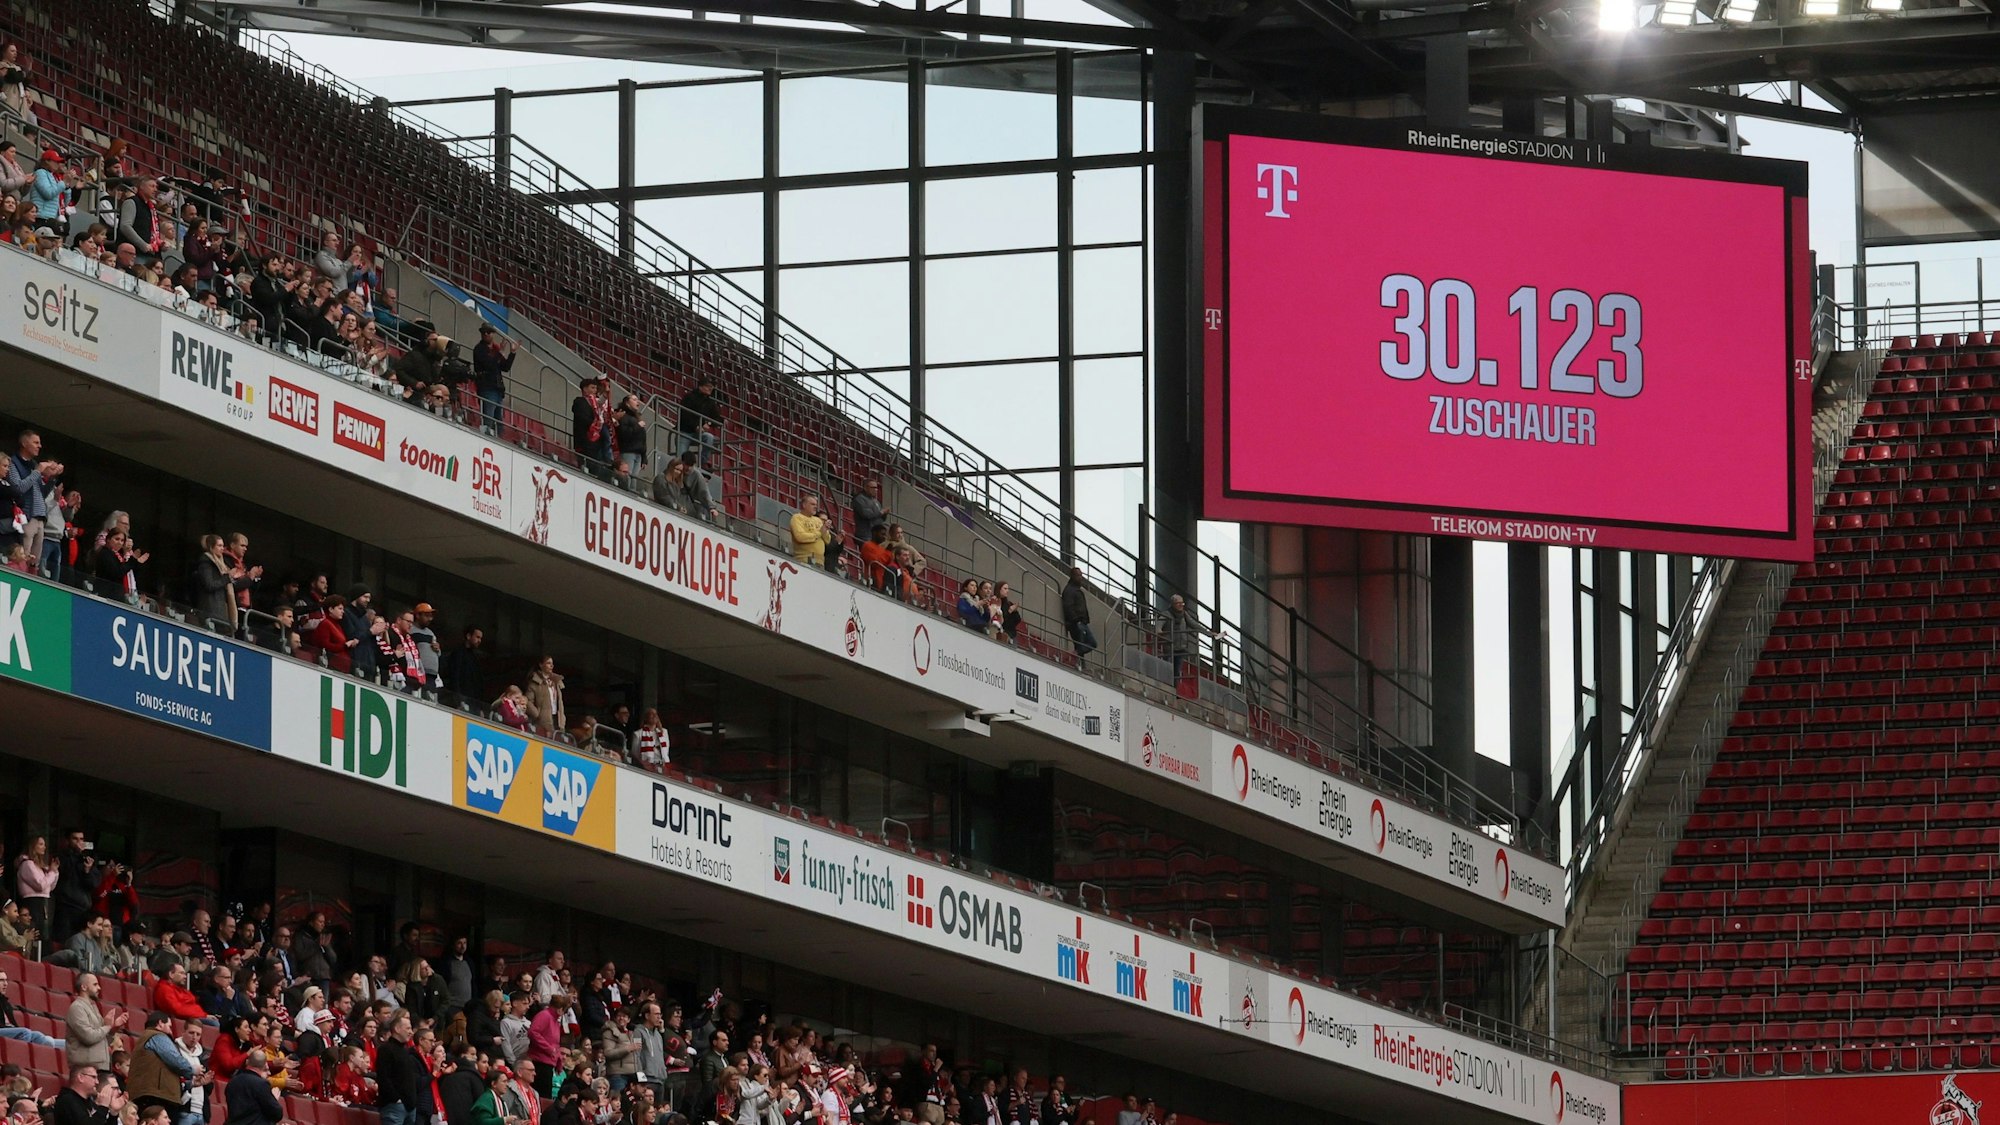 Auf der Anzeigetafel prangt die Zuschauerzahl beim Spiel des 1. FC Köln gegen Werder Bremen.